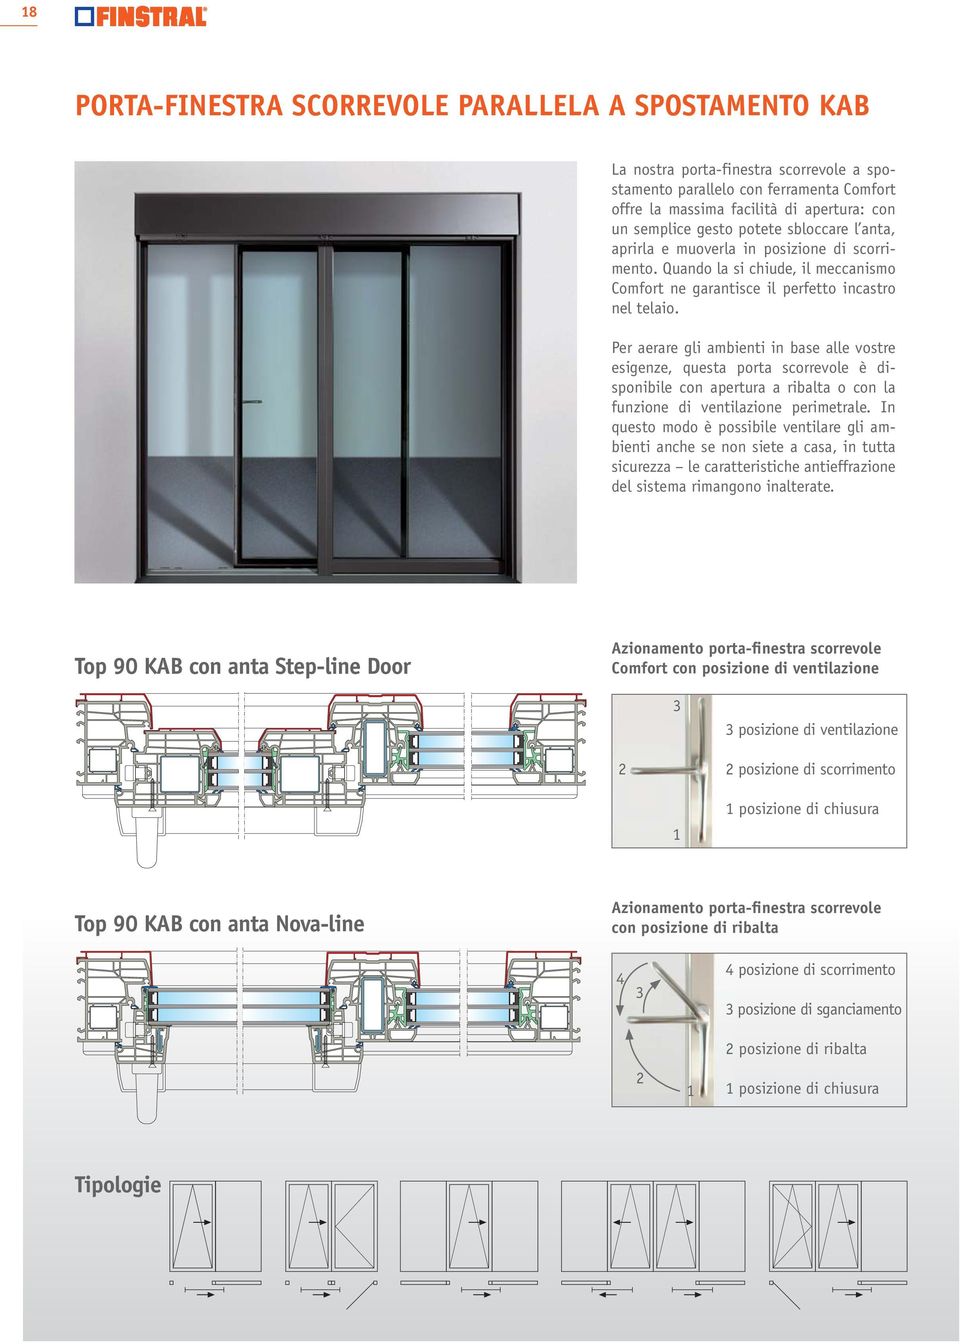 Per aerare gli ambienti in base alle vostre esigenze, questa porta scorrevole è disponibile con apertura a ribalta o con la funzione di ventilazione perimetrale.